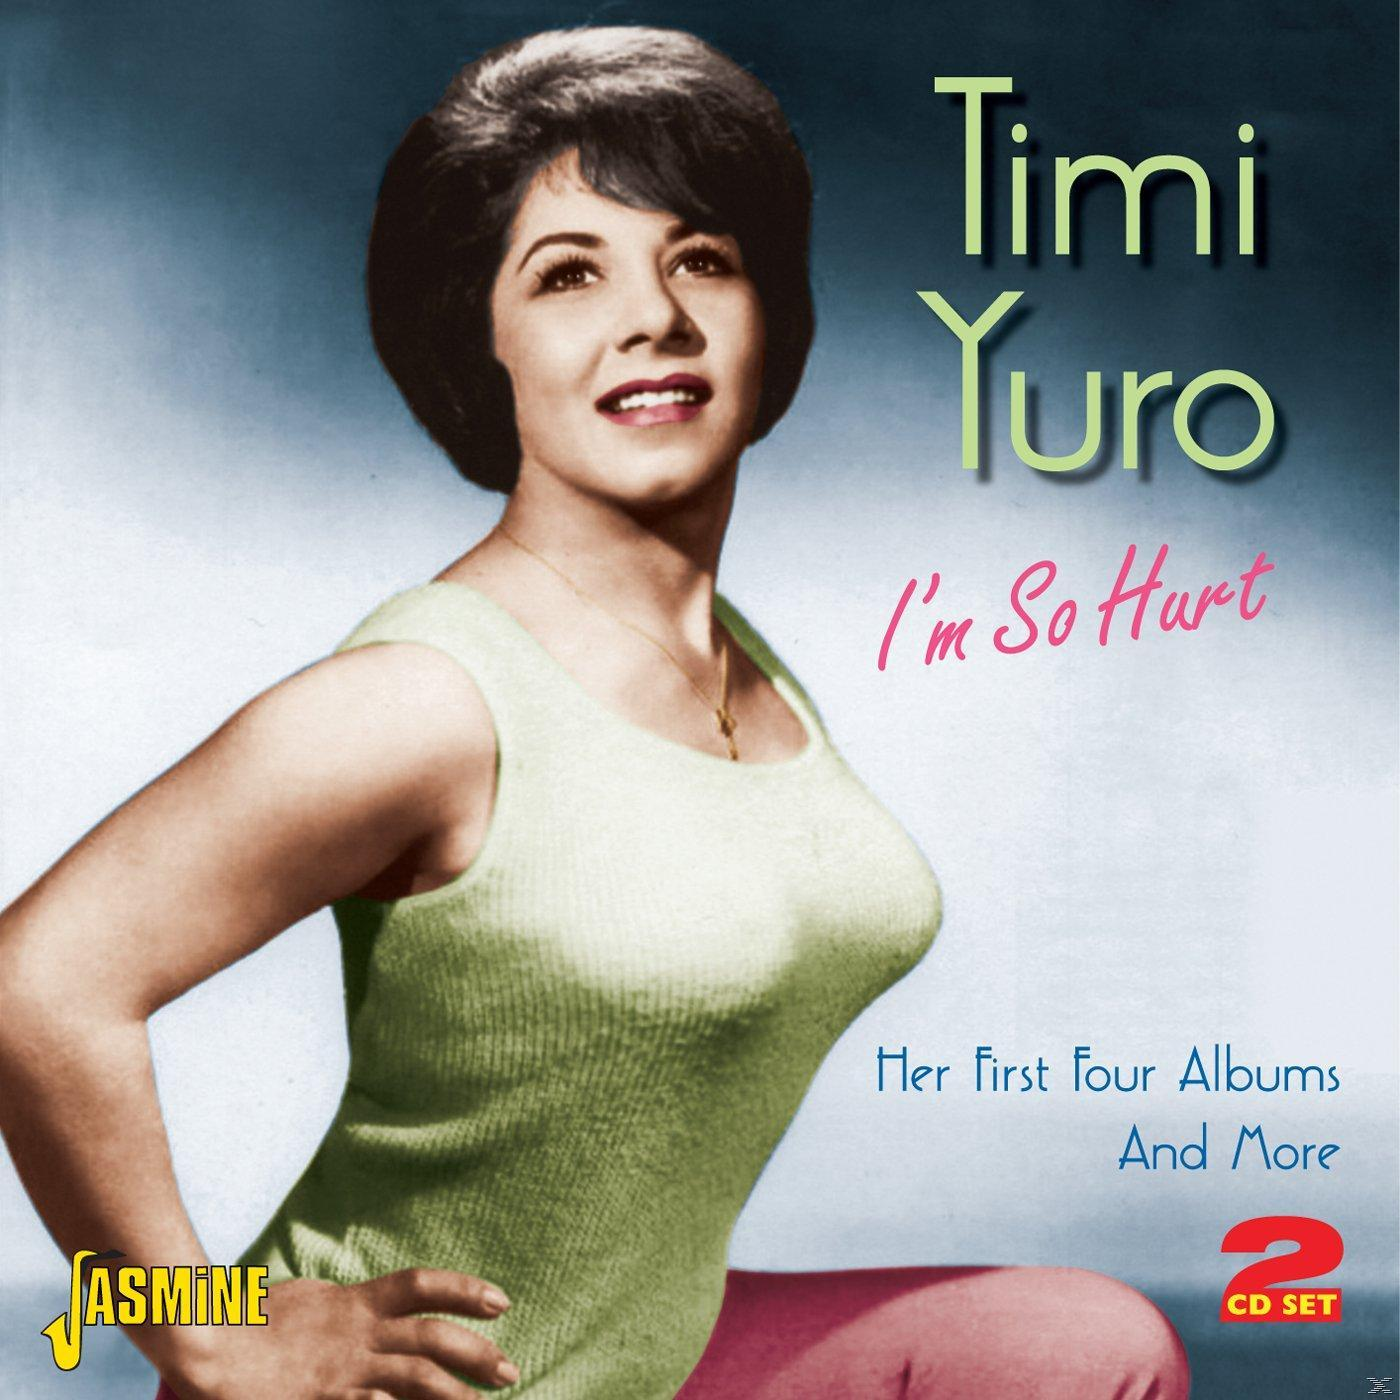 Timi - I\'m Yuro Hurt (CD) - So